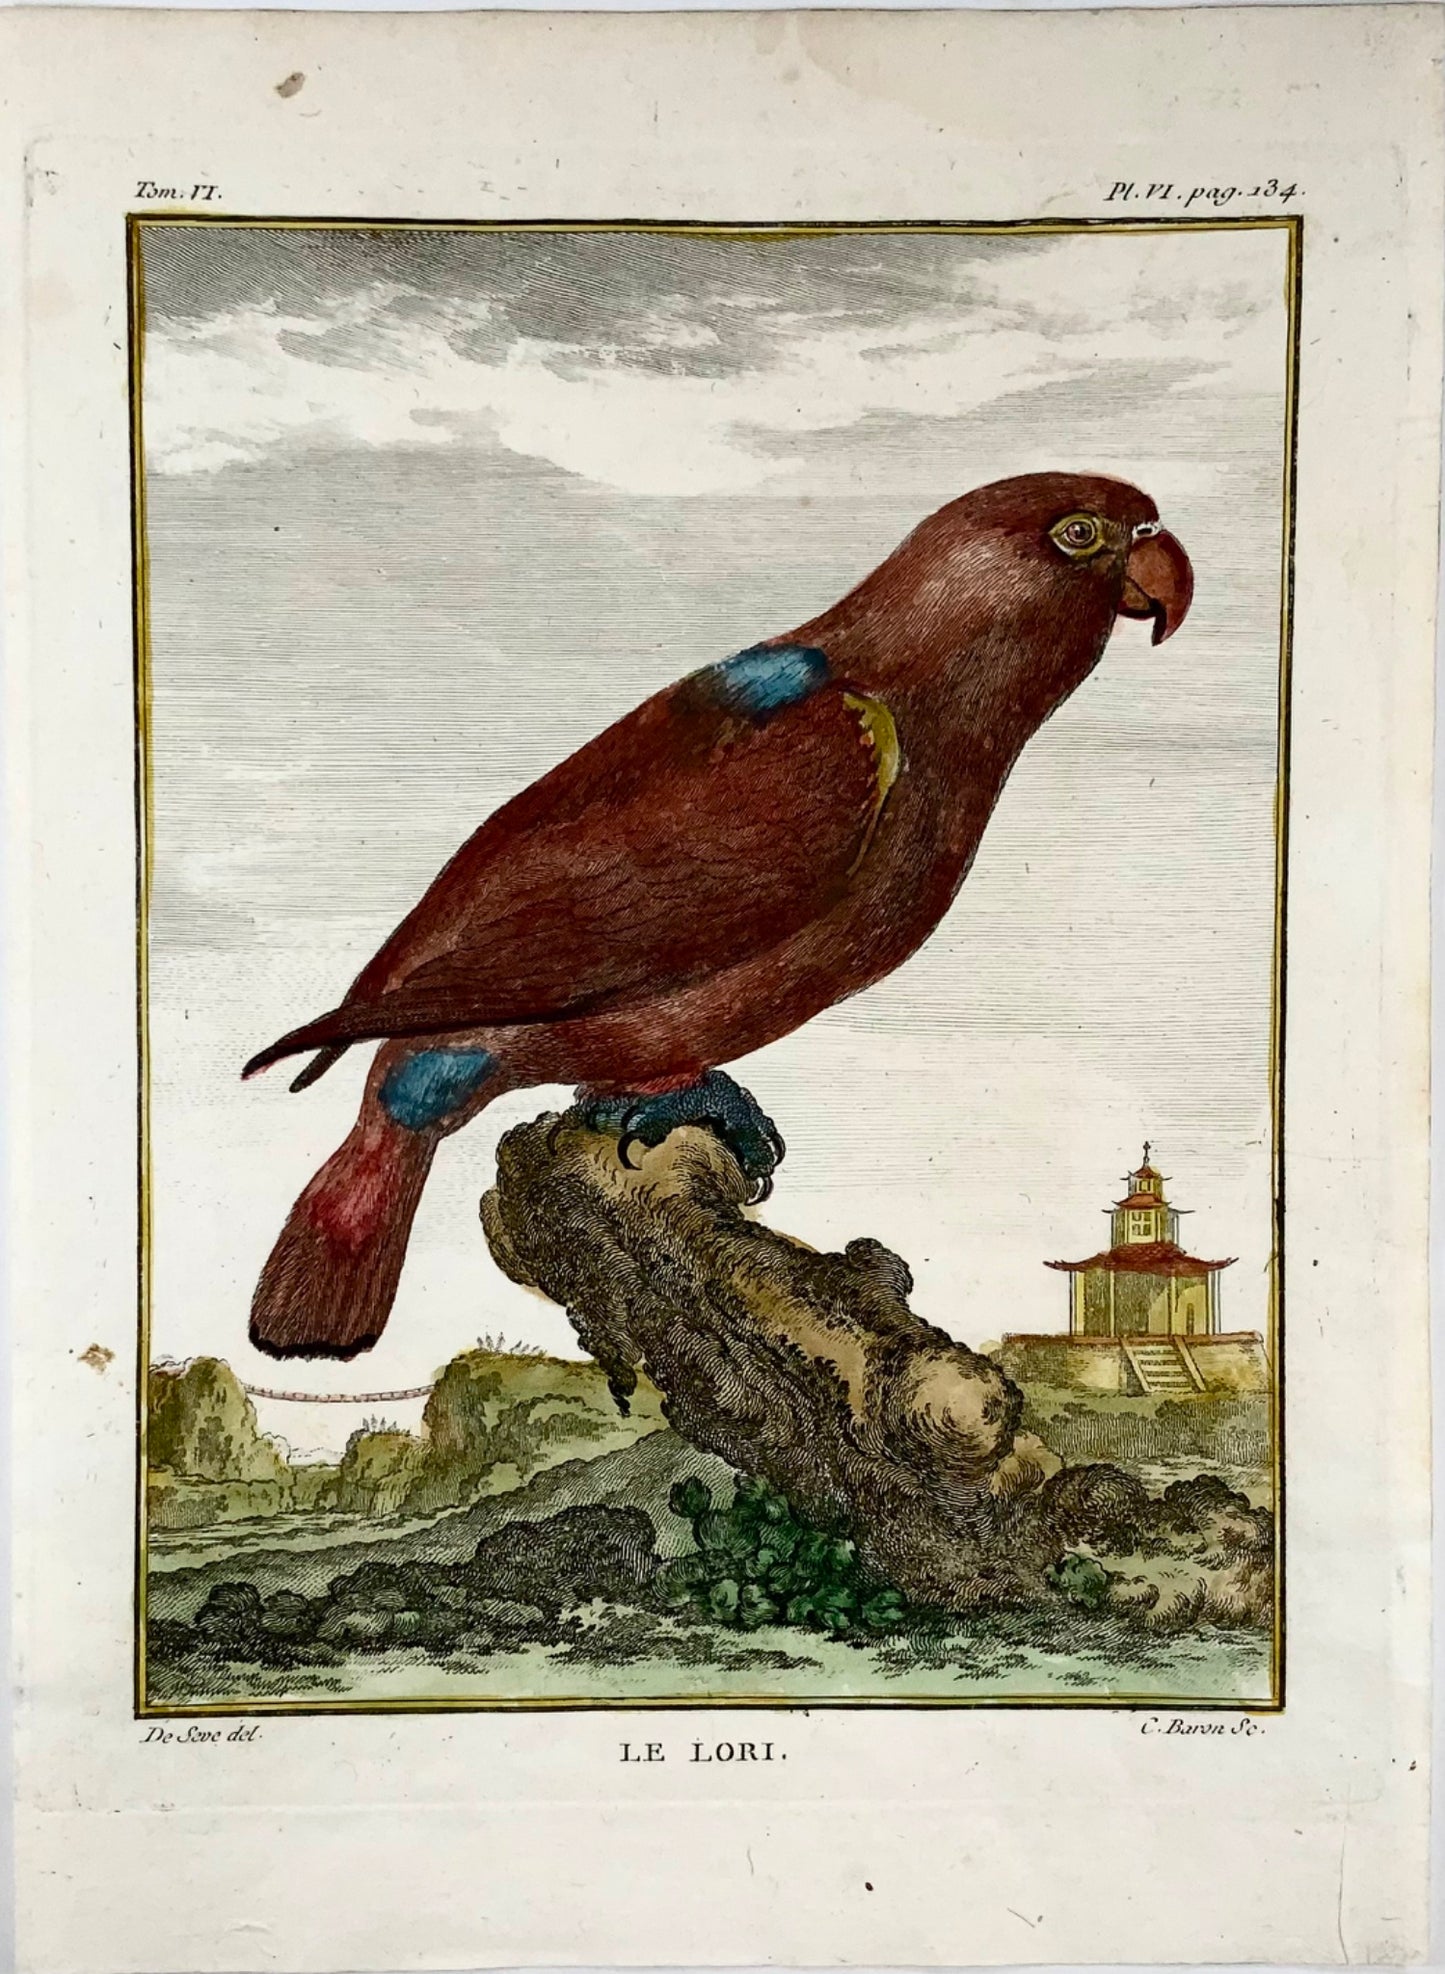 1771 Lori, De Seve, ornithology, large quart edition, engraving